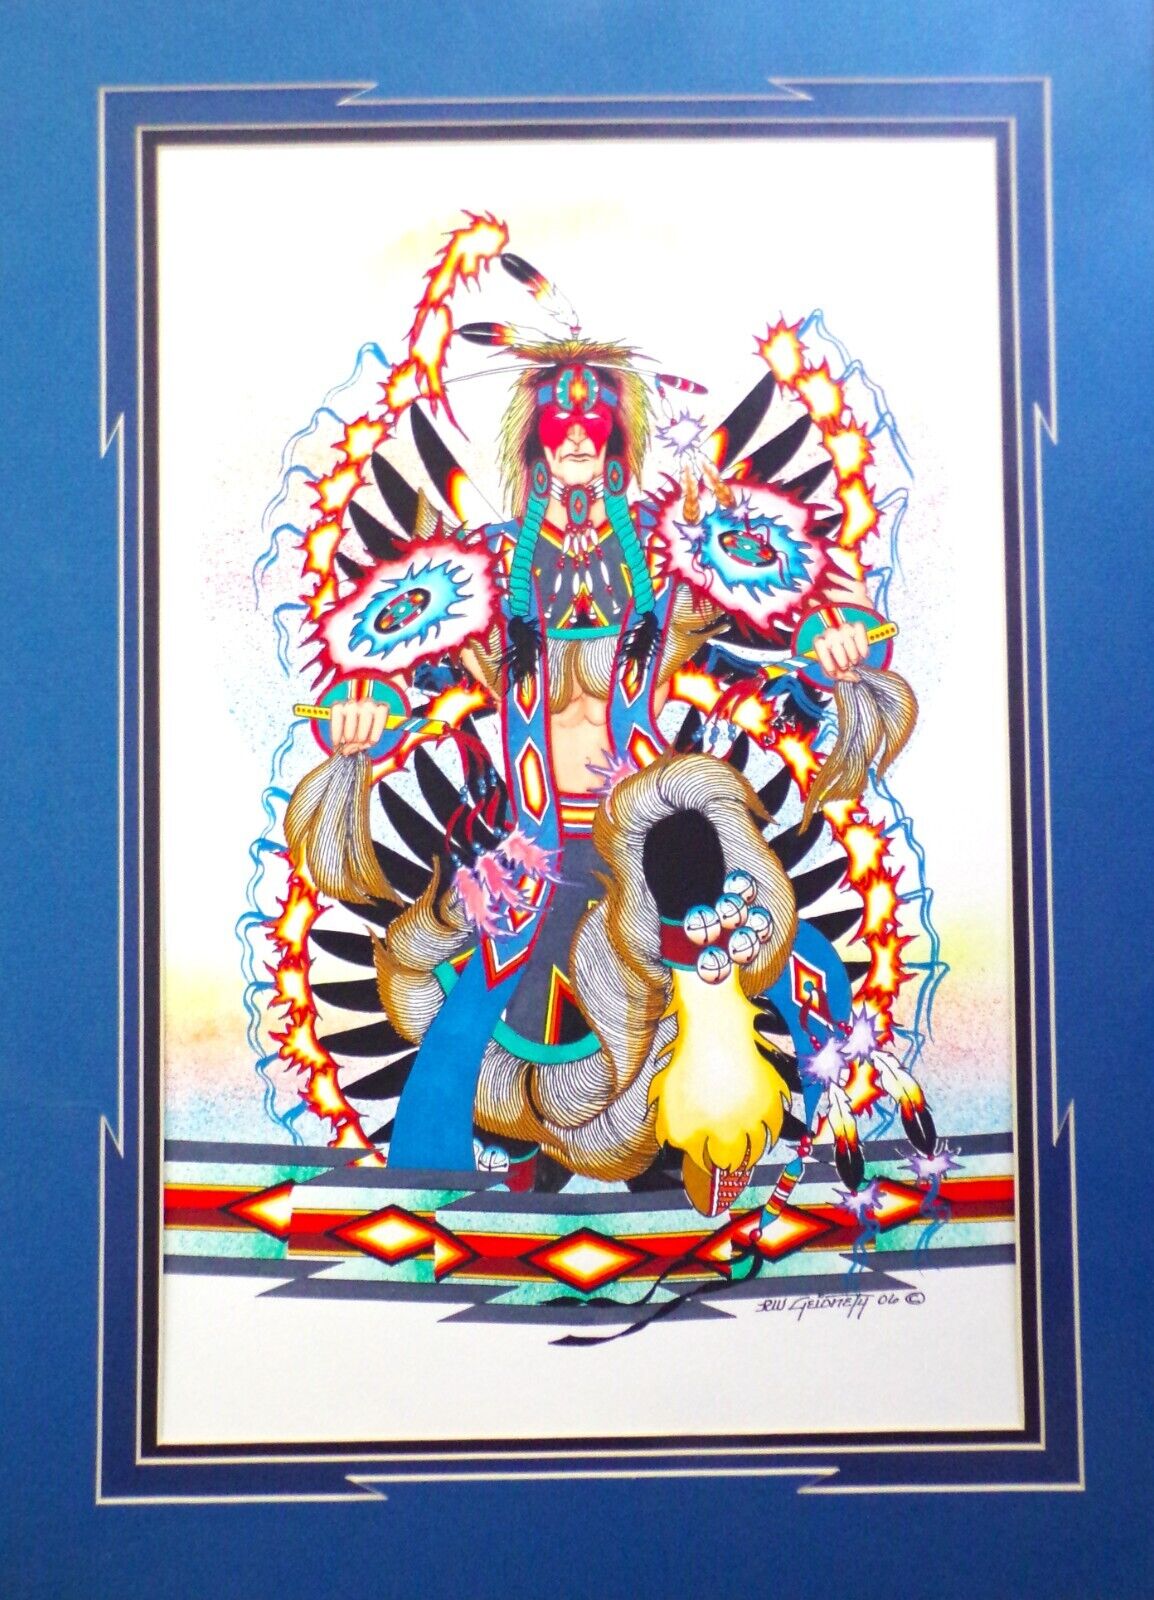 Original Native American Artwork by R.W. Geionety